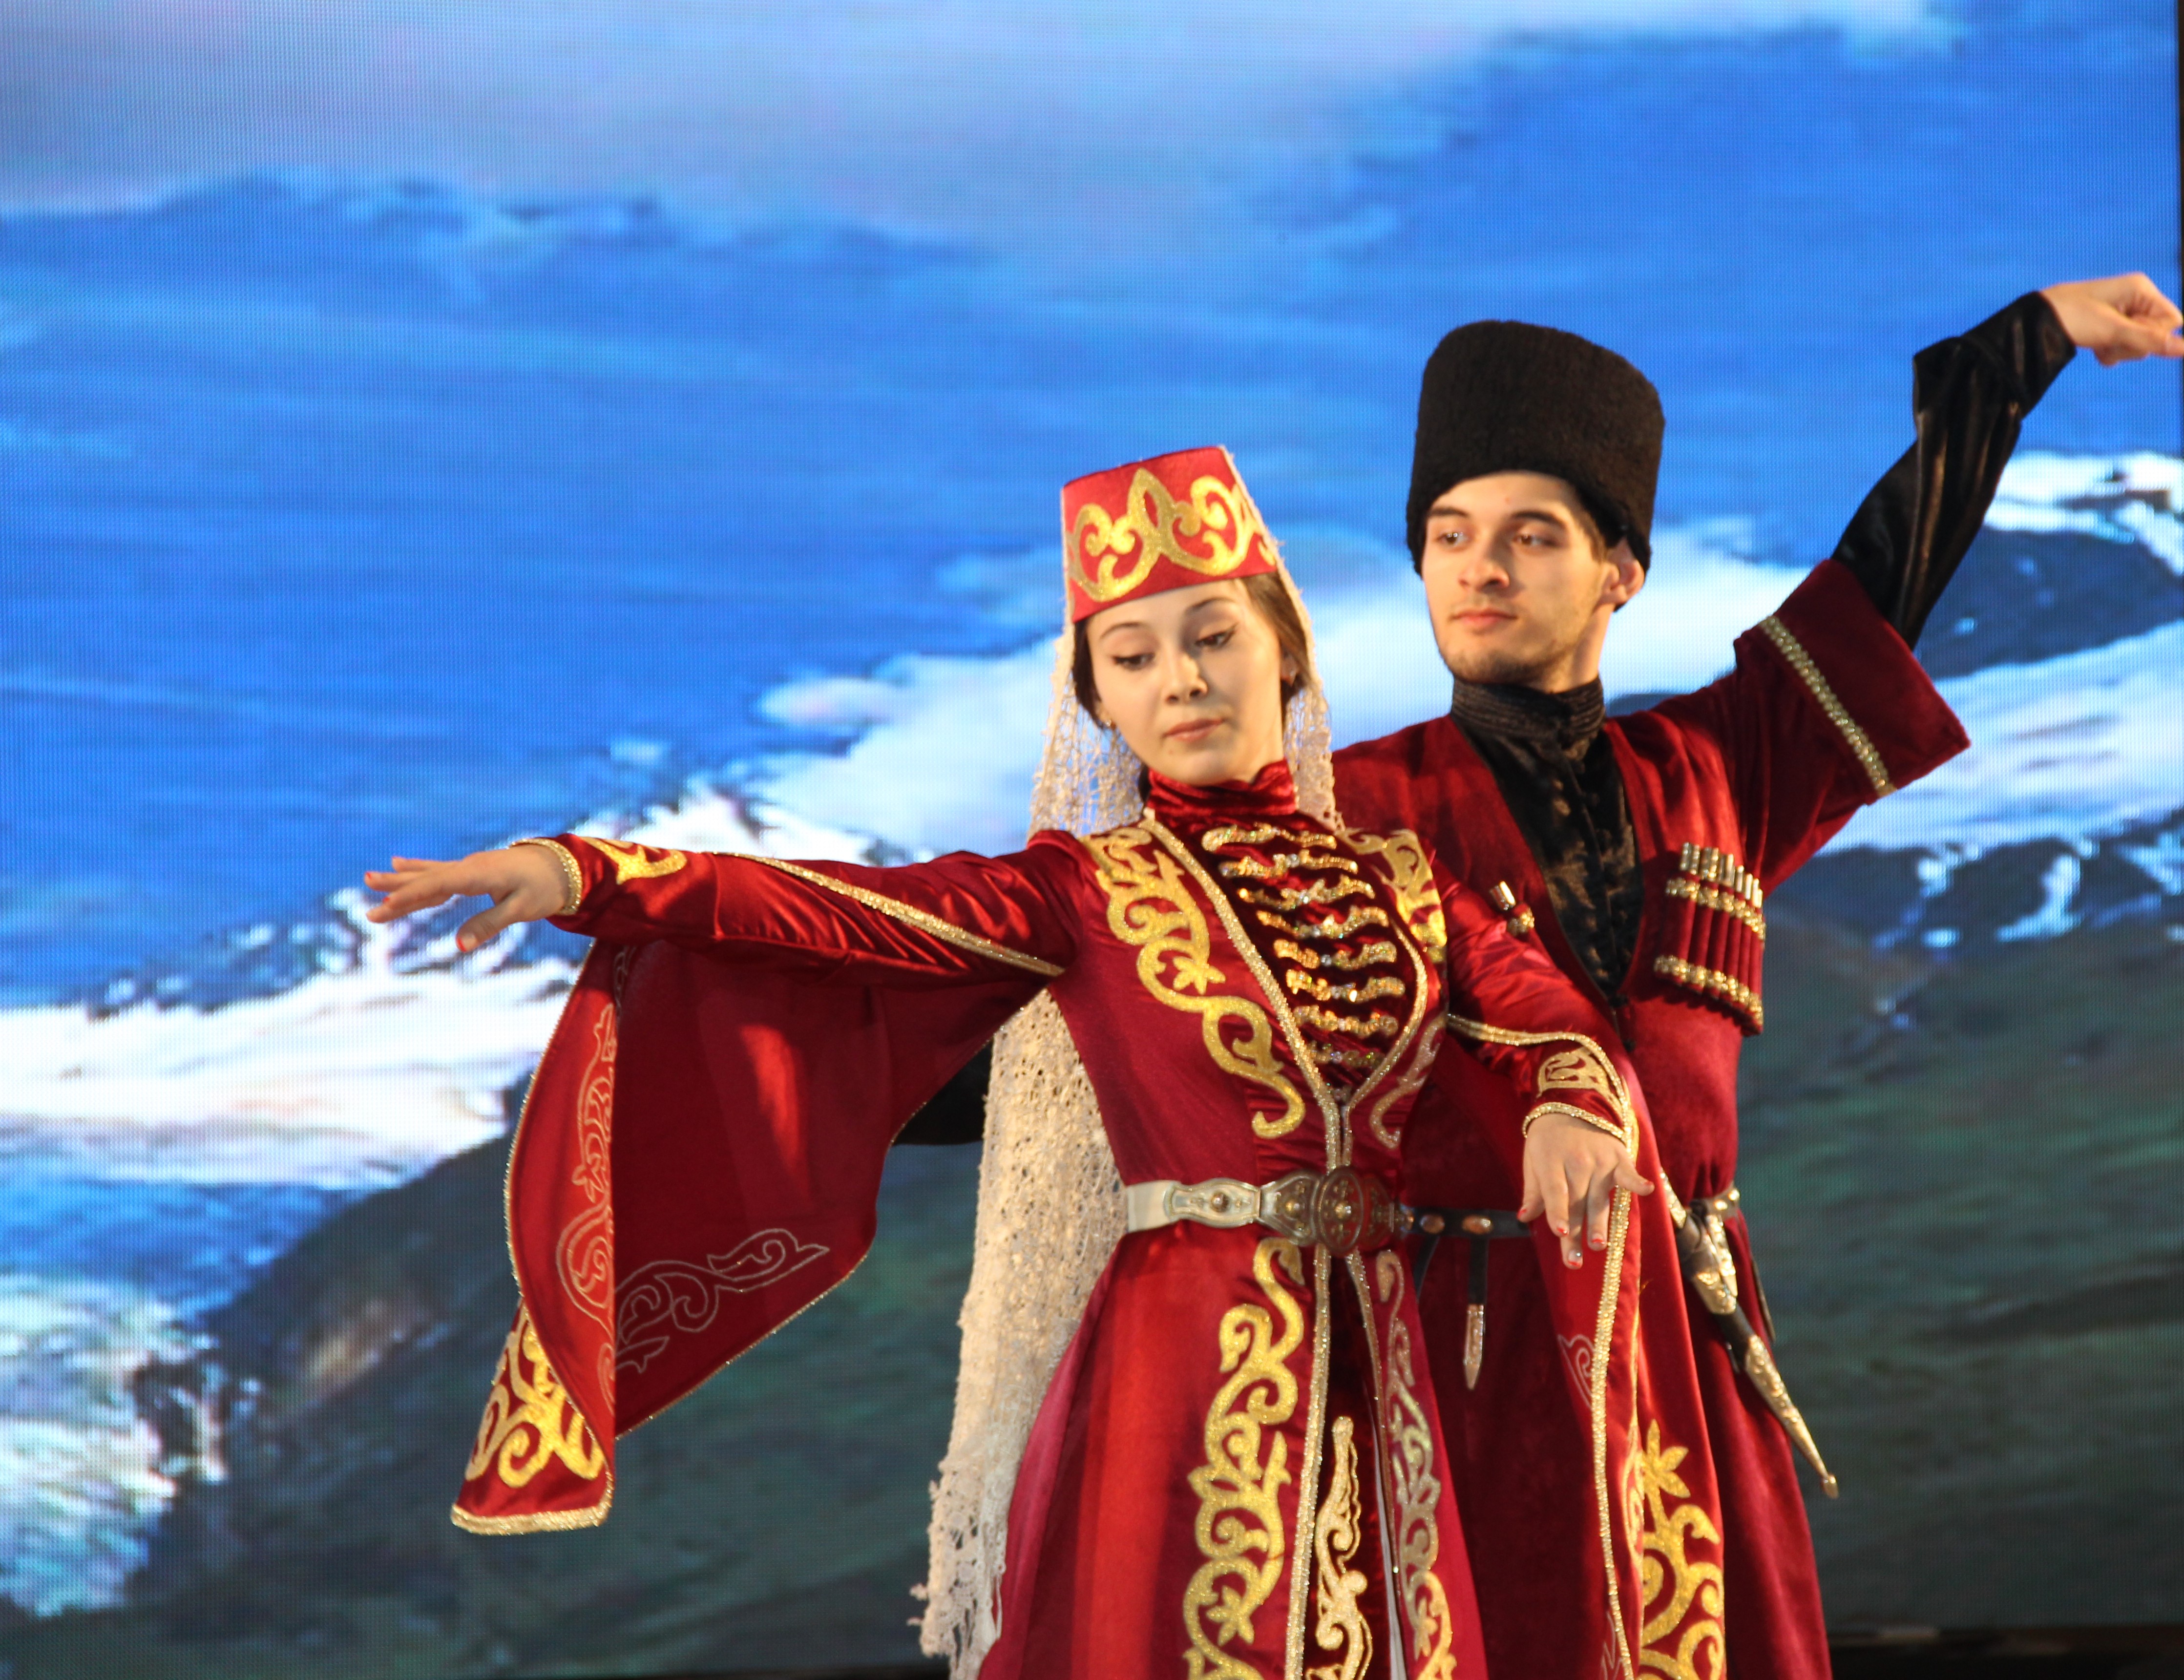 Zhurek национальность. Дагестанский национальный костюм Дагестан. Национальный костюм Дагестана, ченцев. Национальная одежда дагестанцев Дагестана. Дагестанский народный костюм.